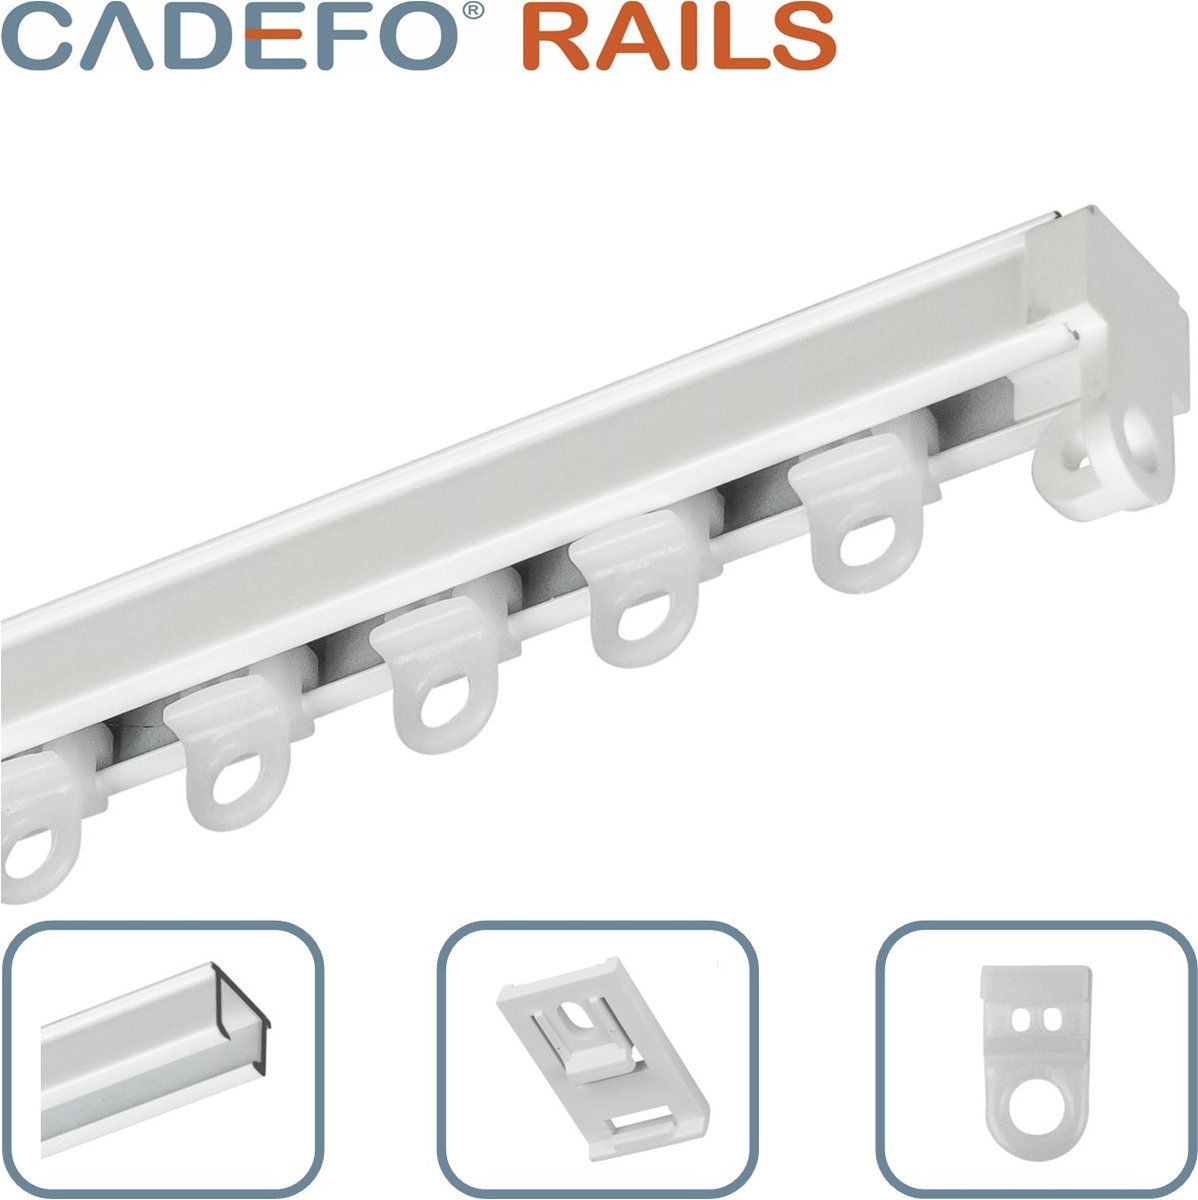 CADEFO RAILS (551 - 600 cm) Gordijnrails - Compleet op maat! - UIT 1 STUK - Leverbaar tot 6 meter - Plafondbevestiging - Lengte 555 cm